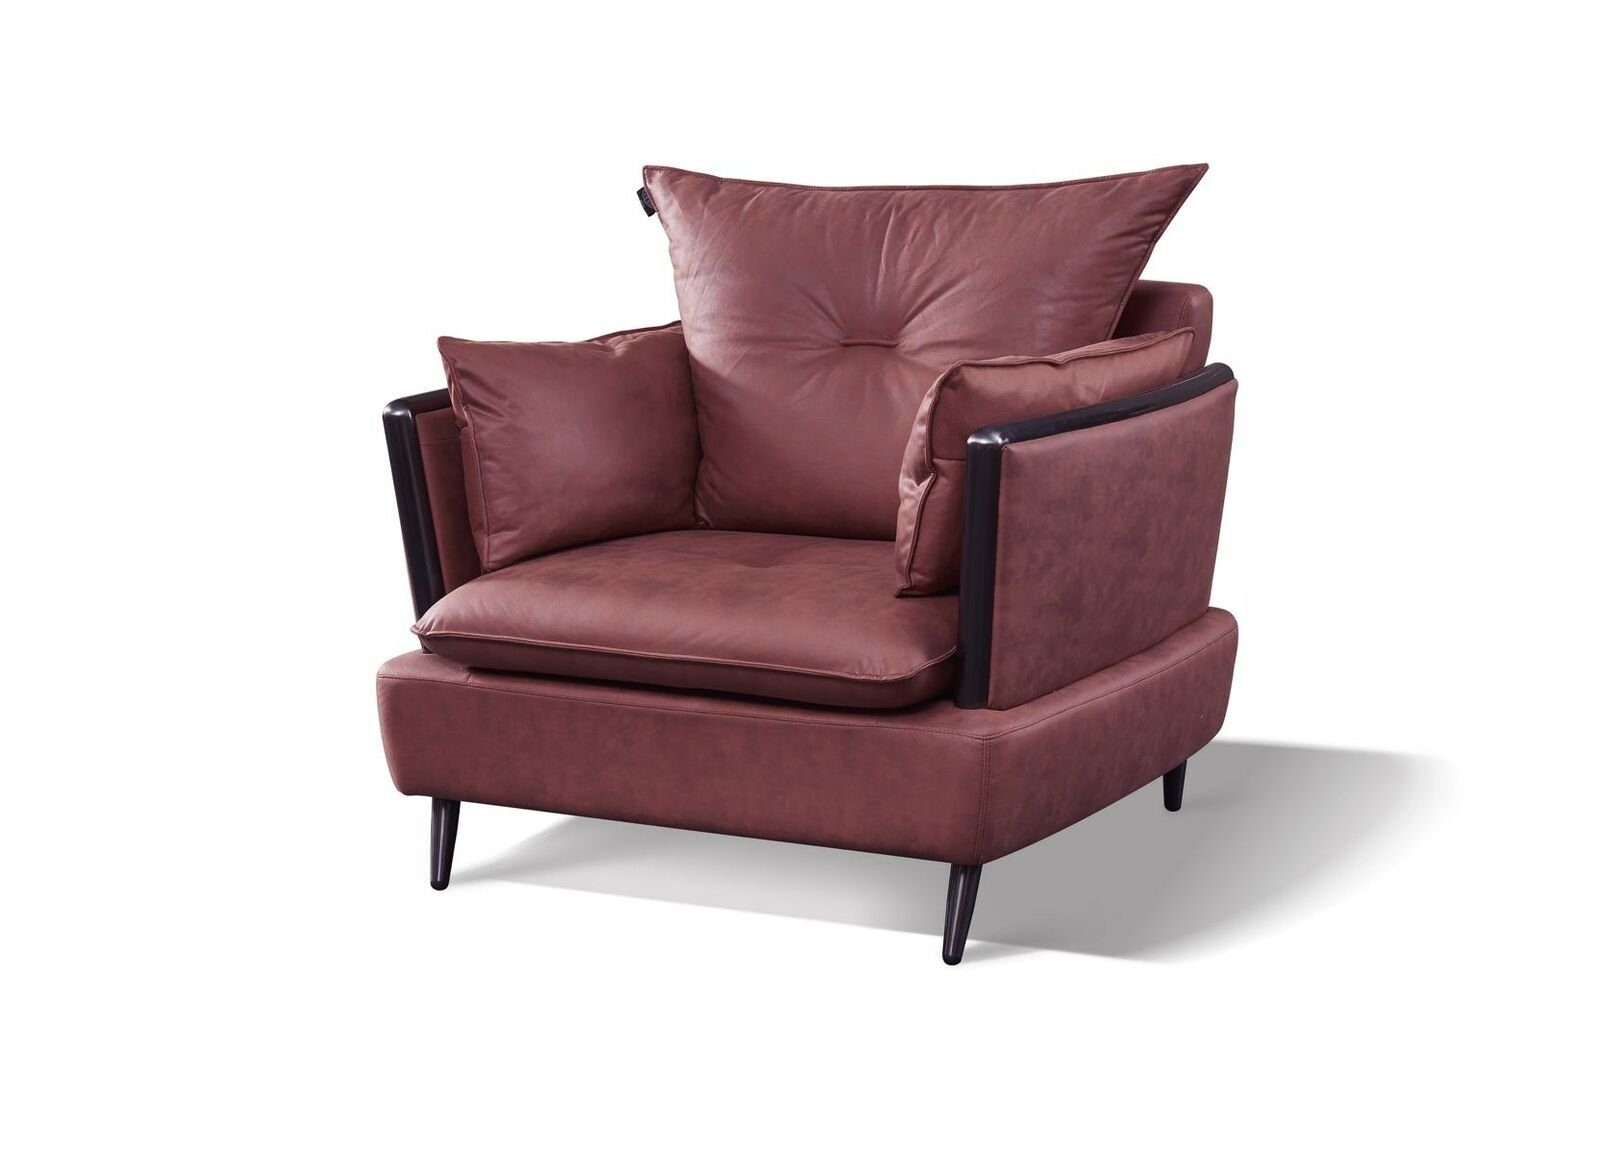 JVmoebel Sofa Graue Sofagarnitur Wohnzimmer Couchen Luxus Sessel Sofas 3 tlg, Made in Europe Rot